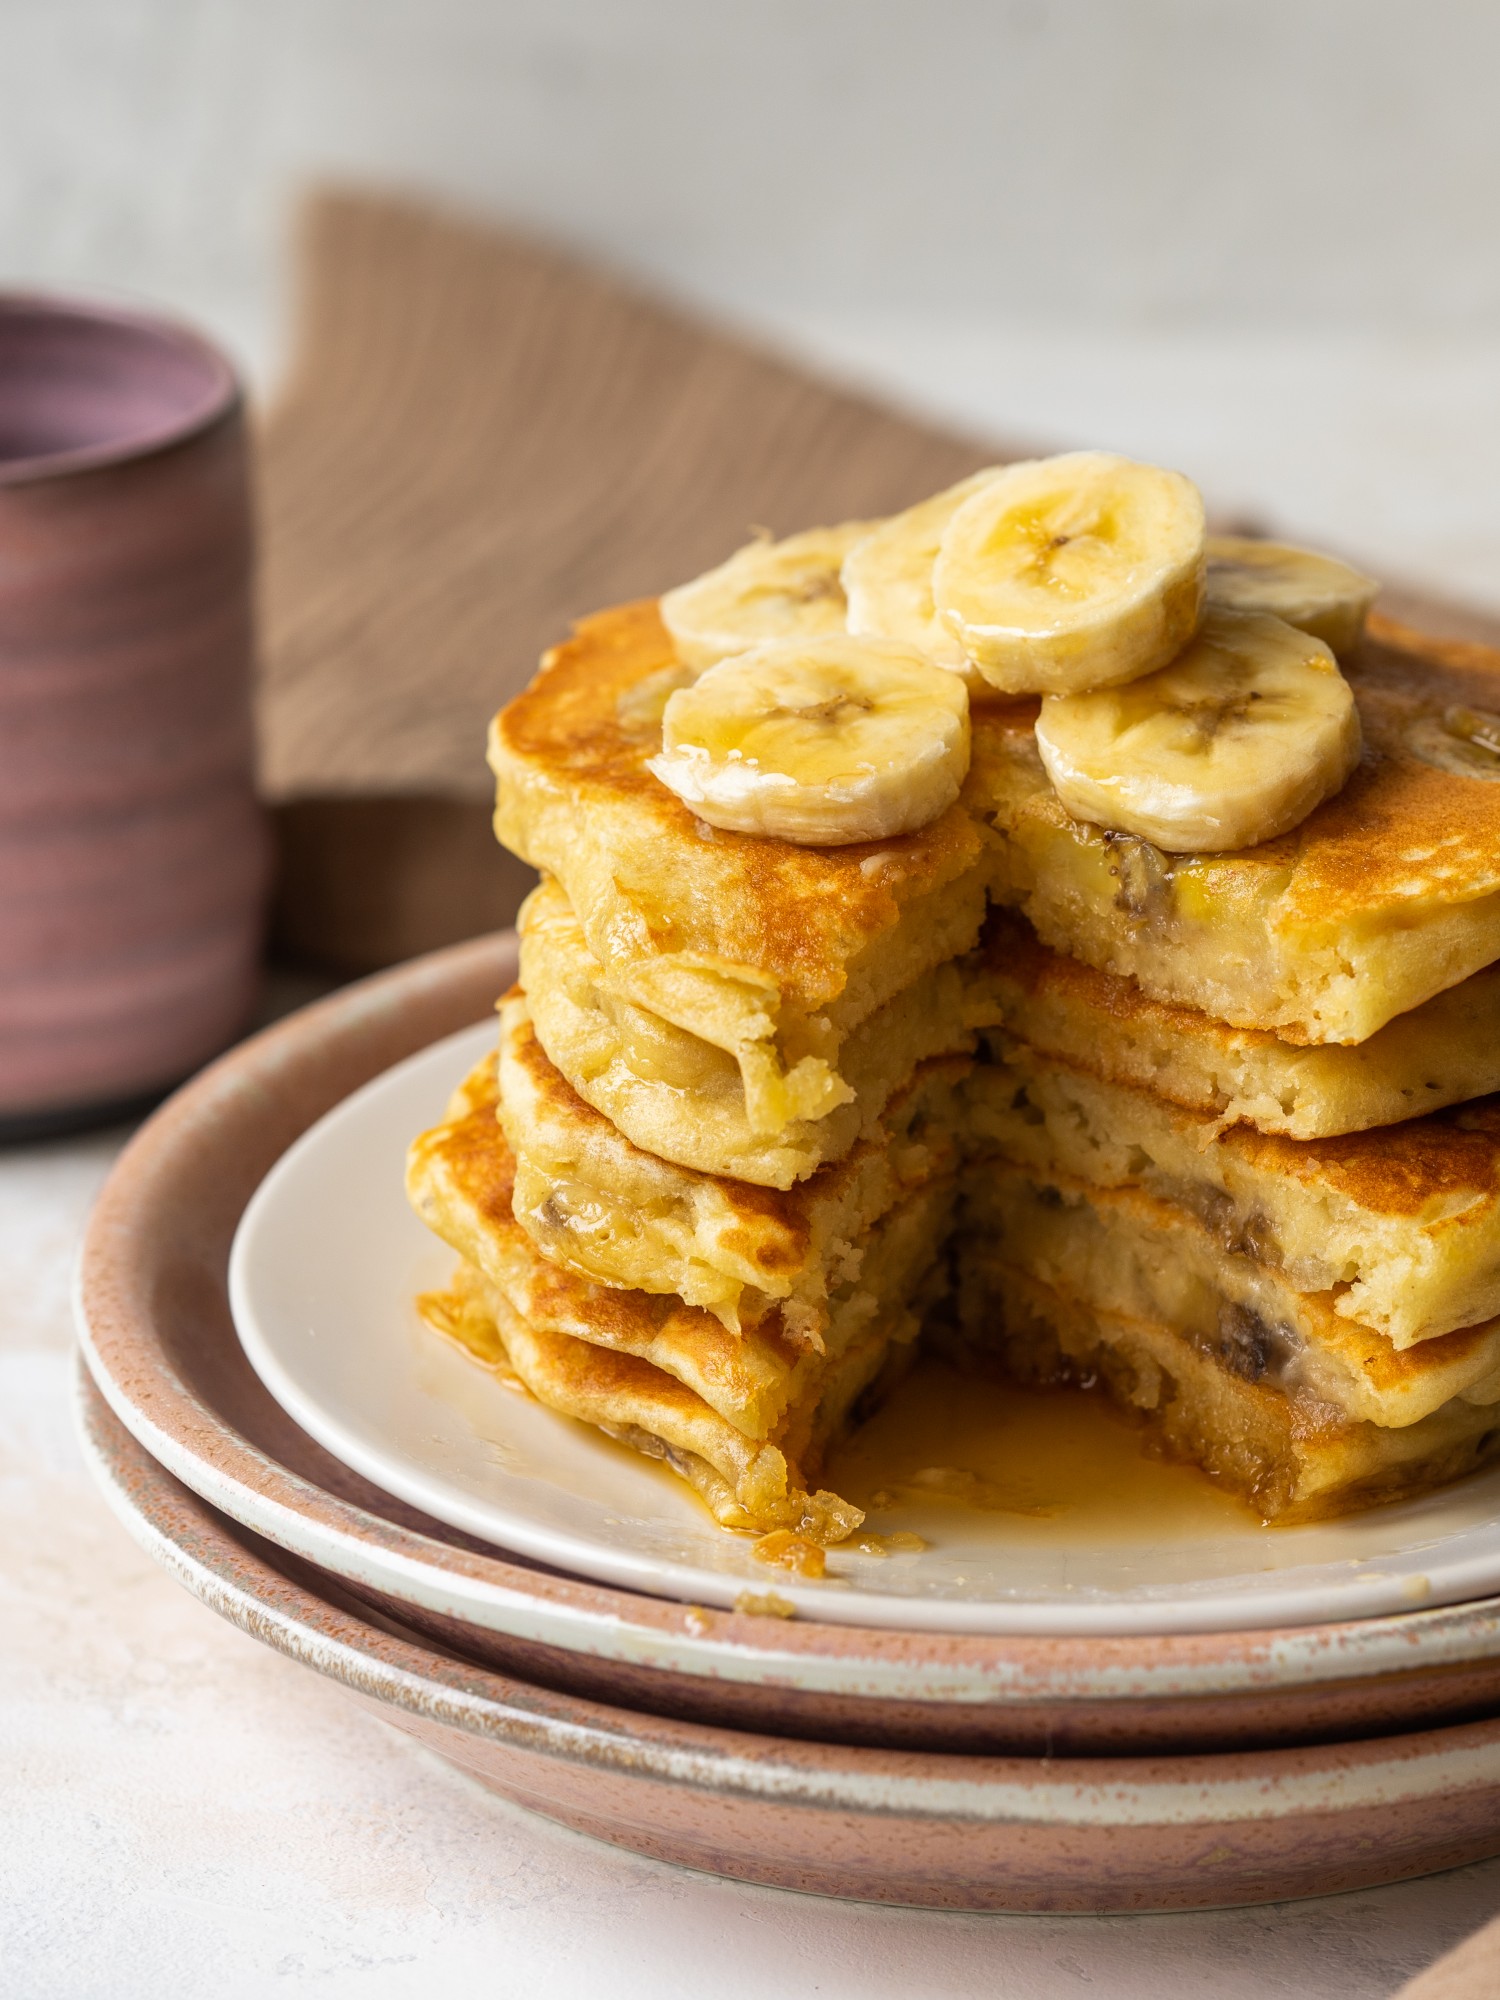 The BEST Fluffy Banana Pancakes - Easy Homemade Banana Pancakes